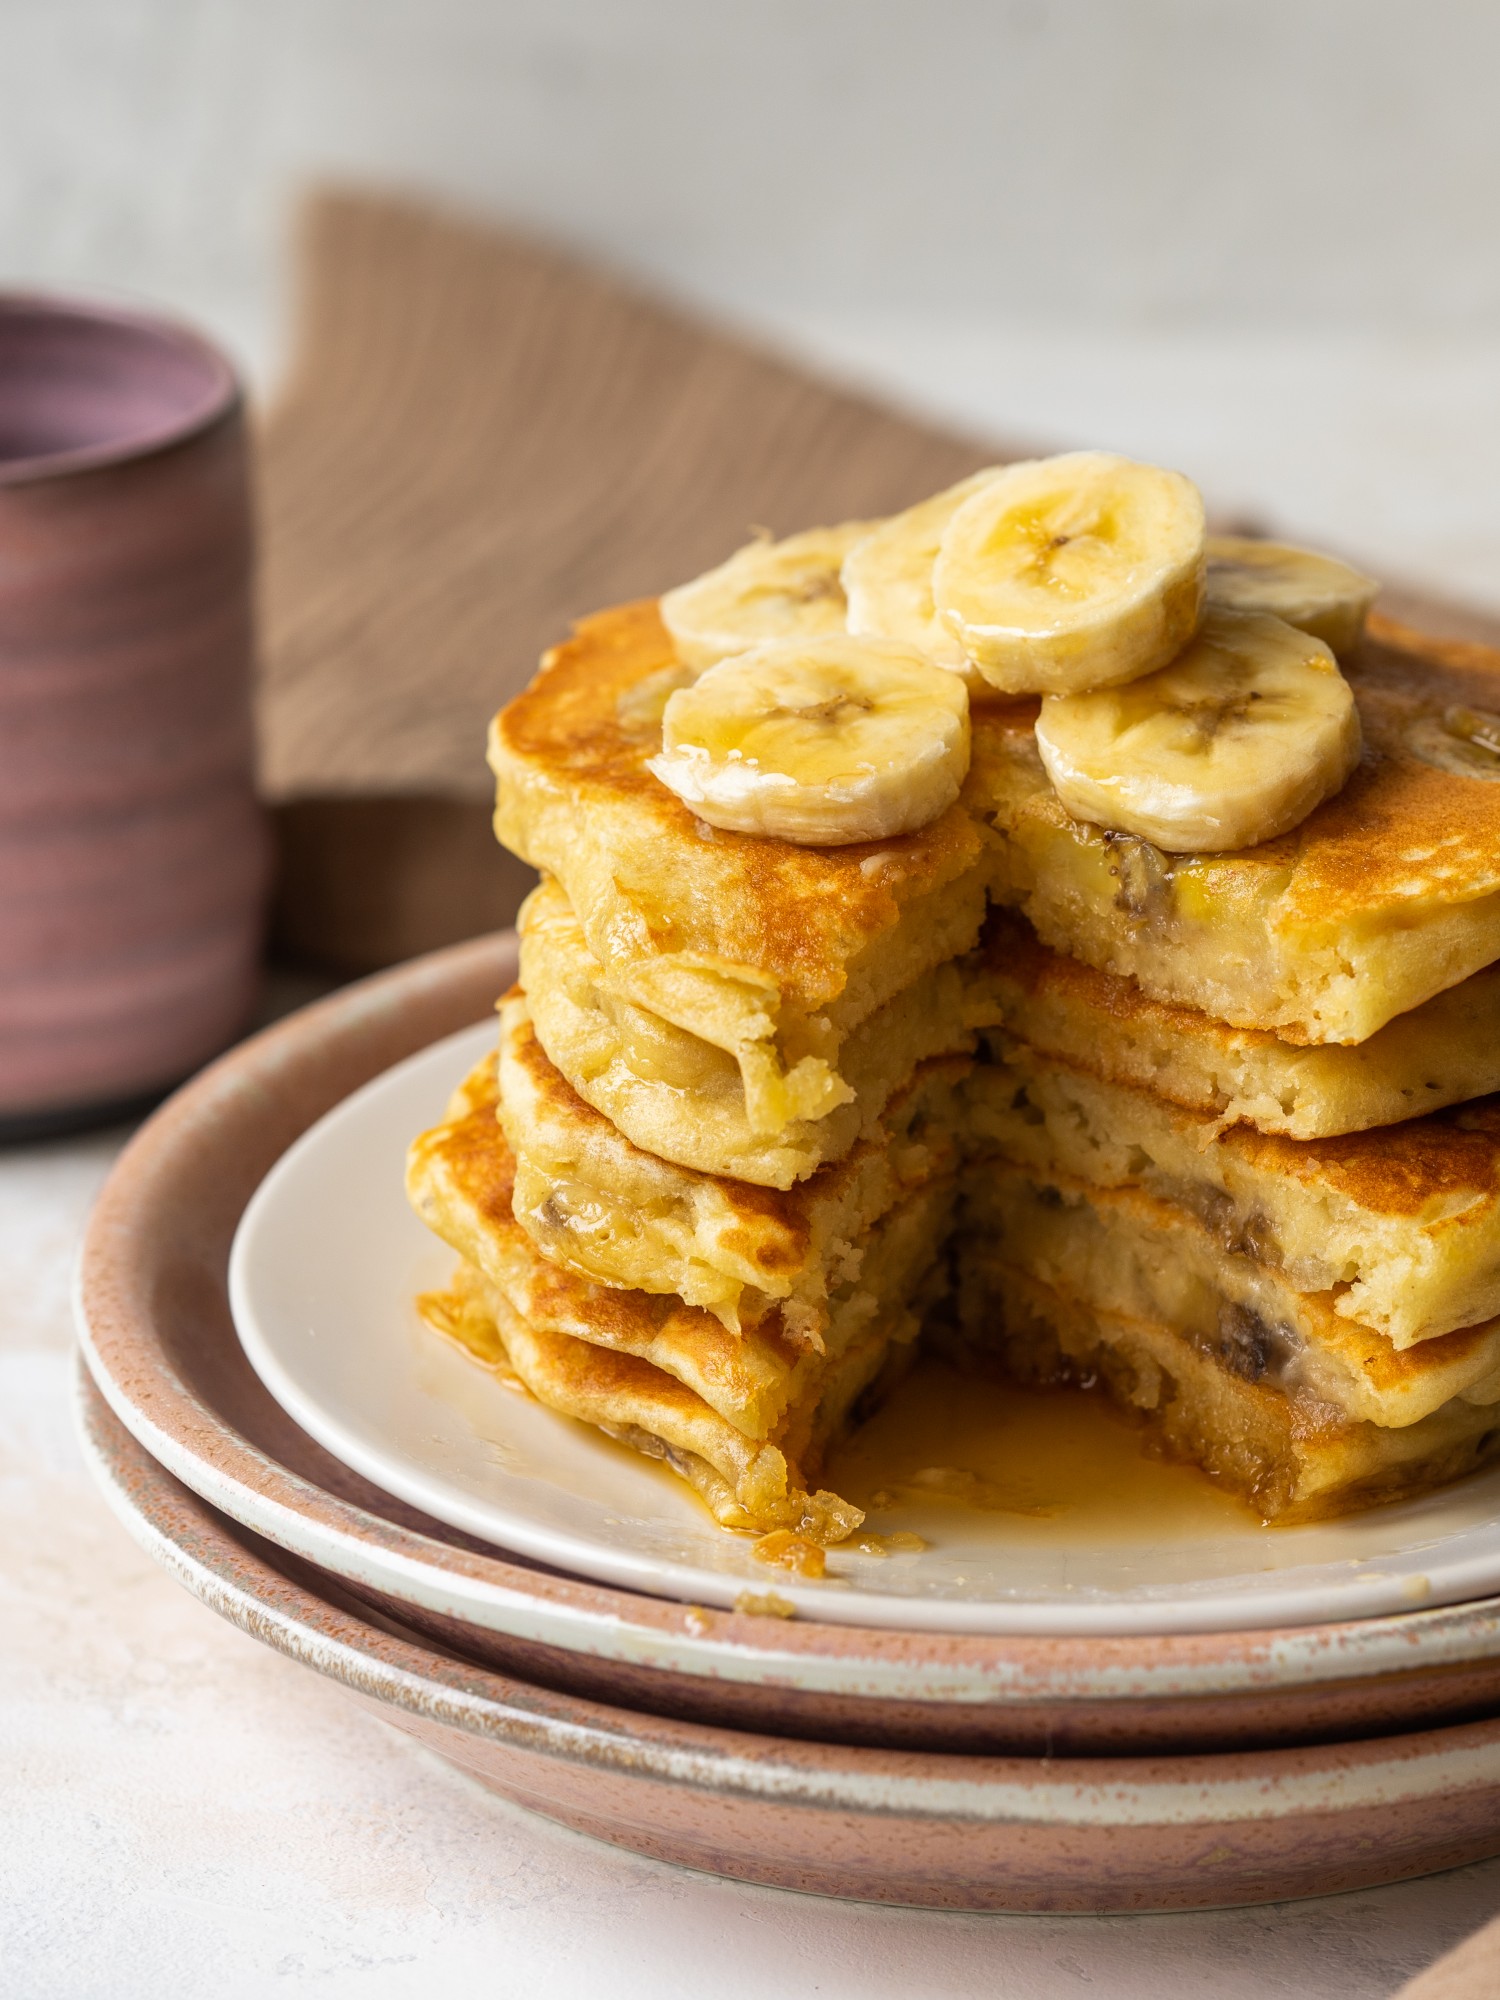 The BEST Fluffy Banana Pancakes - Easy Homemade Banana Pancakes